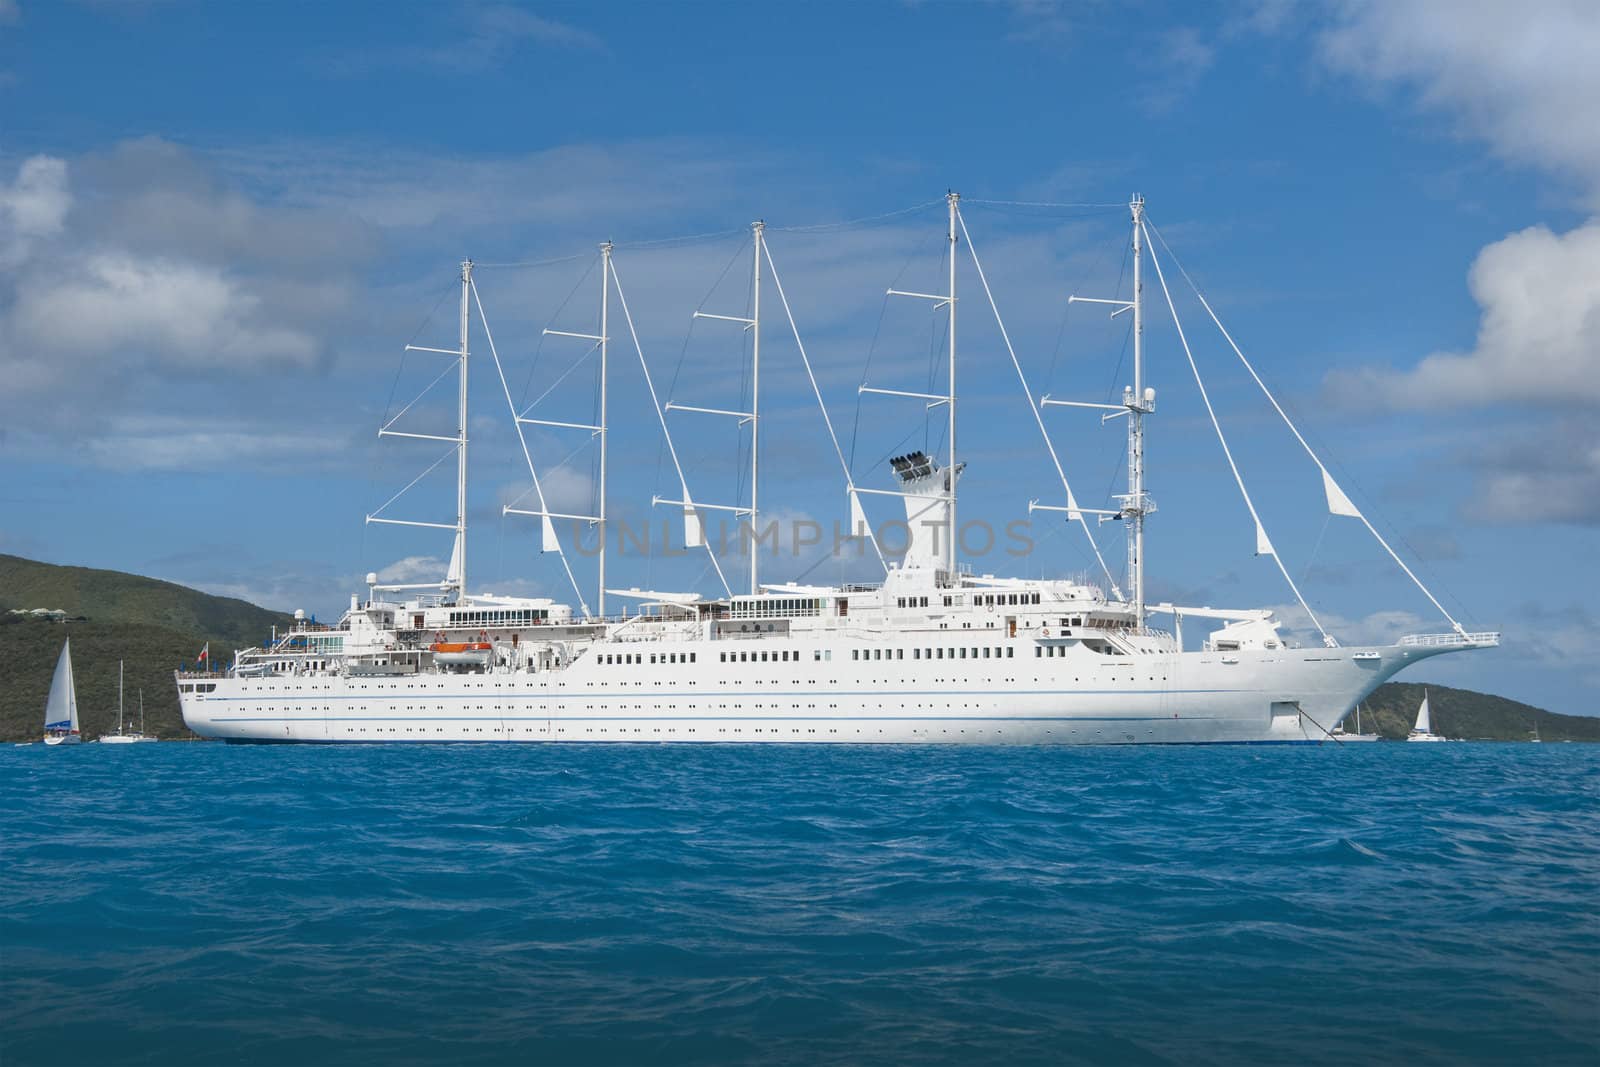 Large 5 masted sailing cruise ship at anchor